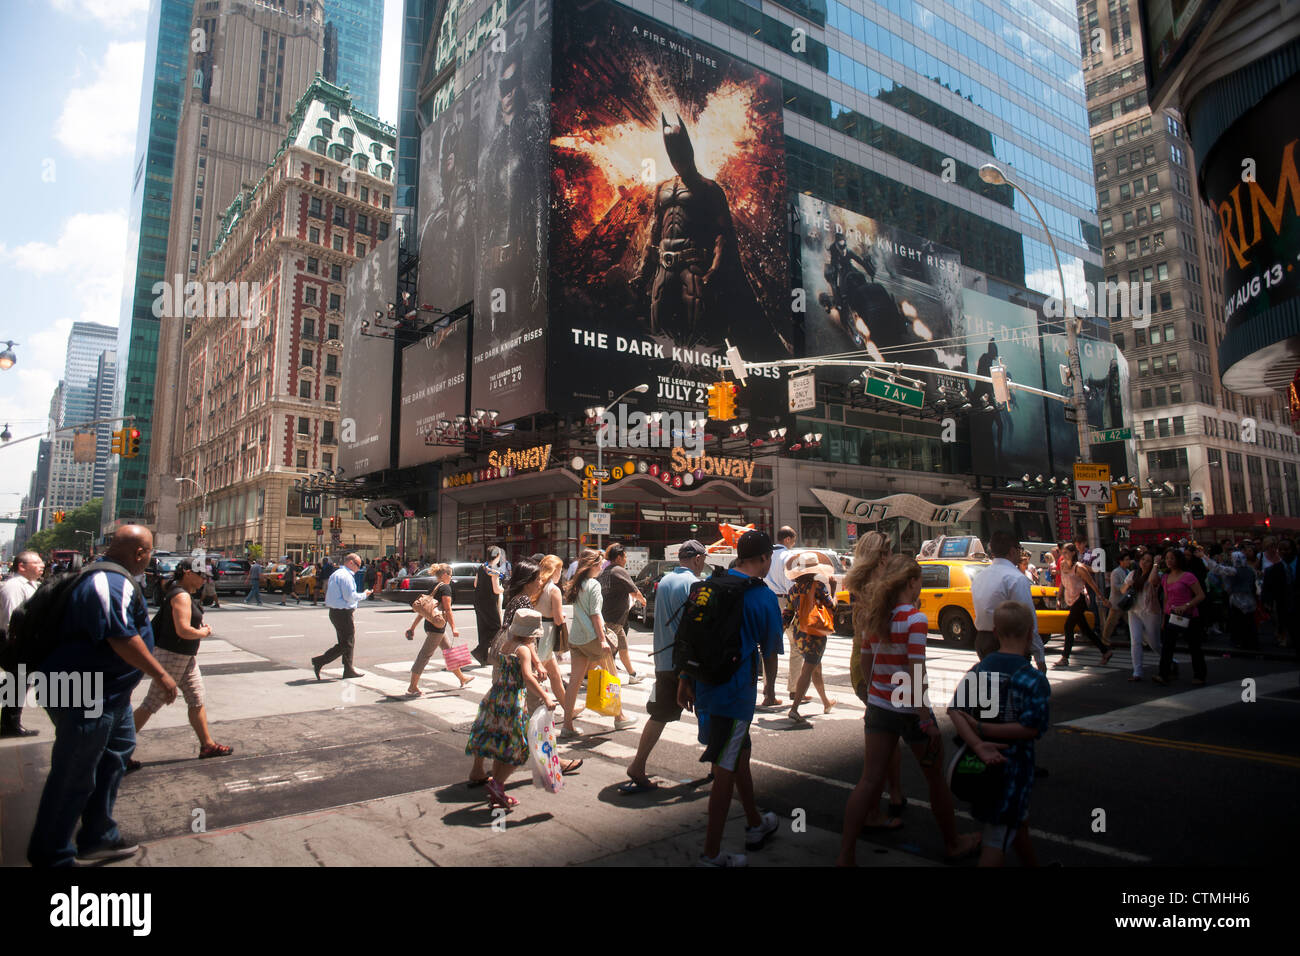 La publicidad de la última película de Batman "The Dark Knight sube" es visto en Times Square Foto de stock